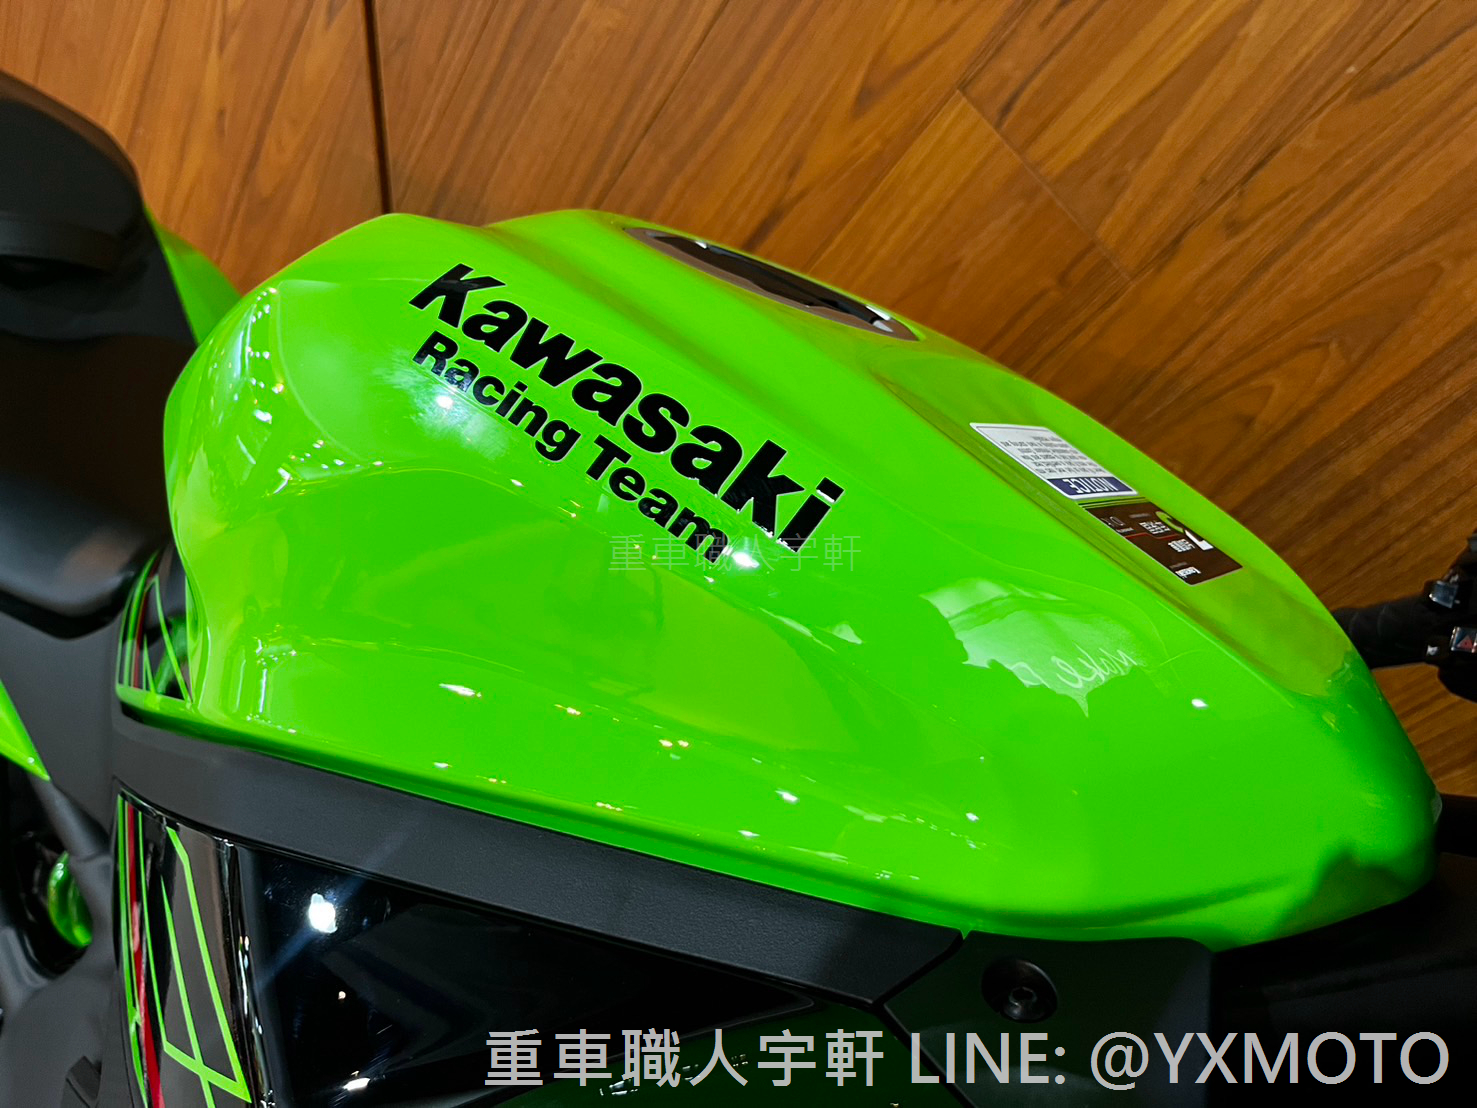 KAWASAKI ZX-4RR新車出售中 【敏傑宇軒】四缸跑車 Kawasaki ZX-4RR KRT 廠隊綠 總代理公司車 | 重車銷售職人-宇軒 (敏傑)